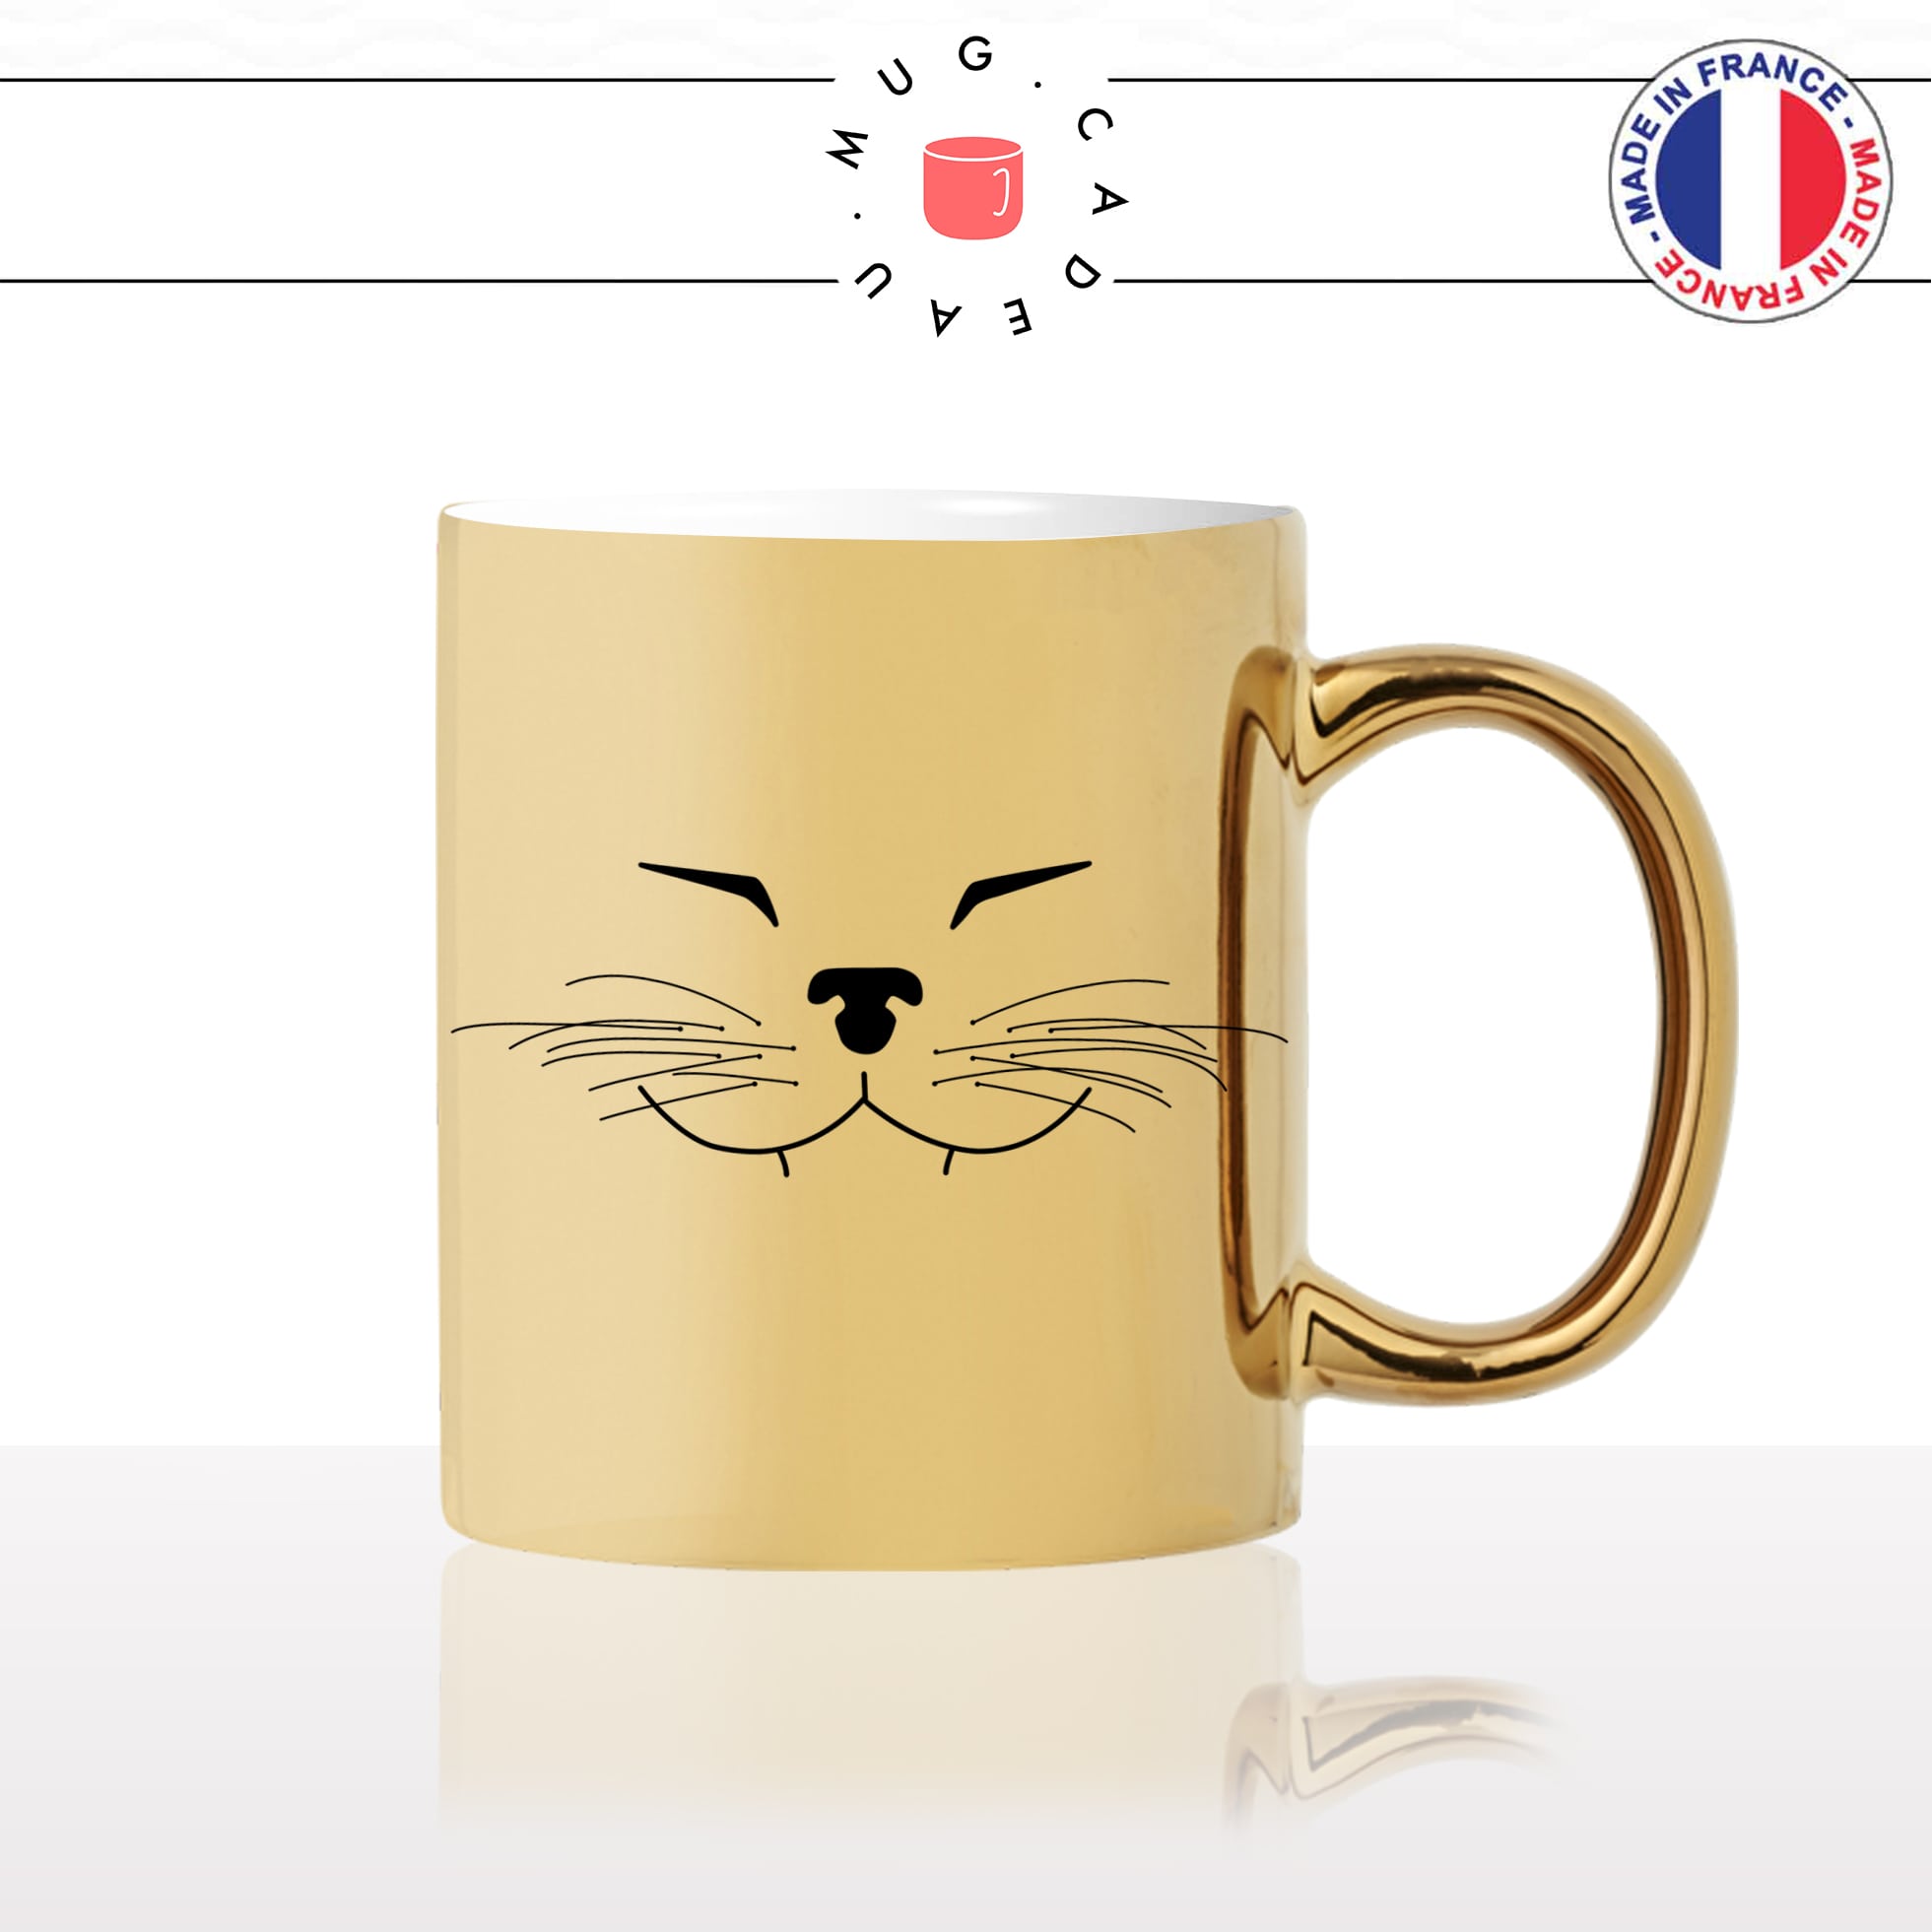 mug-tasse-or-doré-tete-de-chat-content-moustaches-mignon-animal-chaton-noir-fun-café-thé-idée-cadeau-original-personnalisé-gold2-min